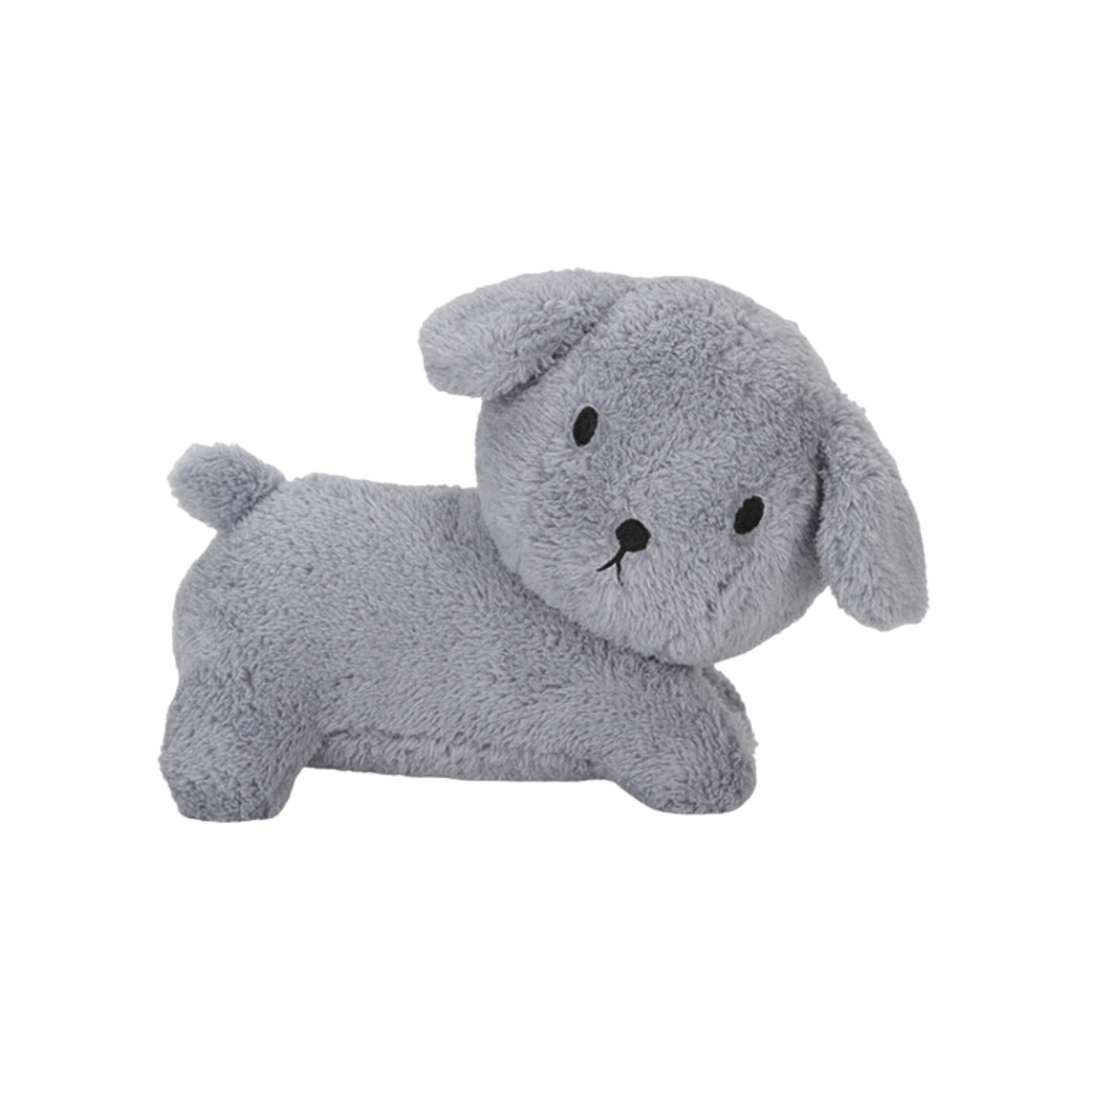 Plush puppy - Fluffy Blue